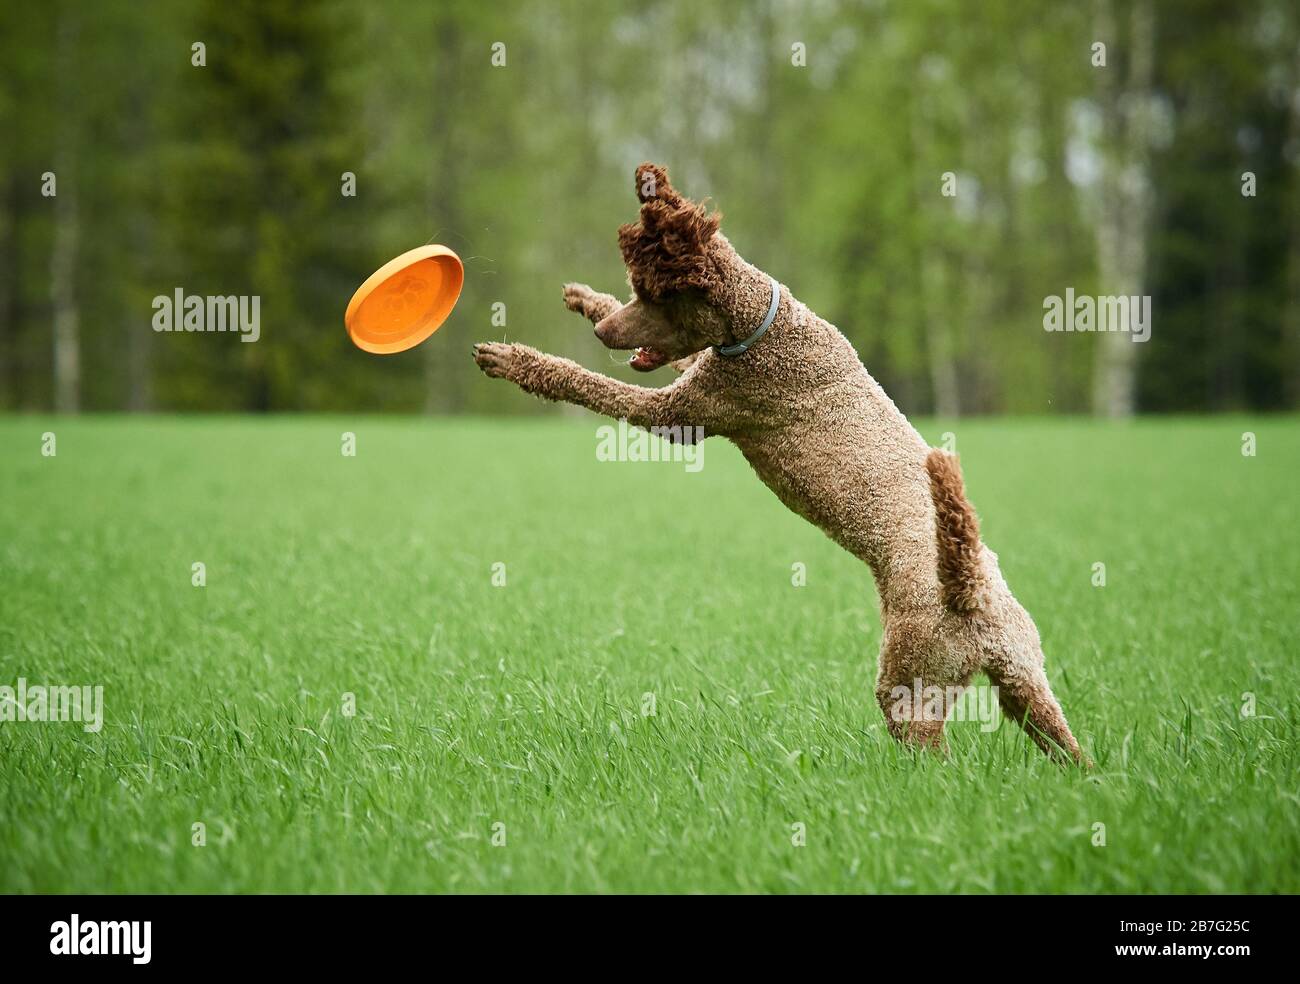 Braun standard poodle Laufen und Springen freudig auf einer Wiese